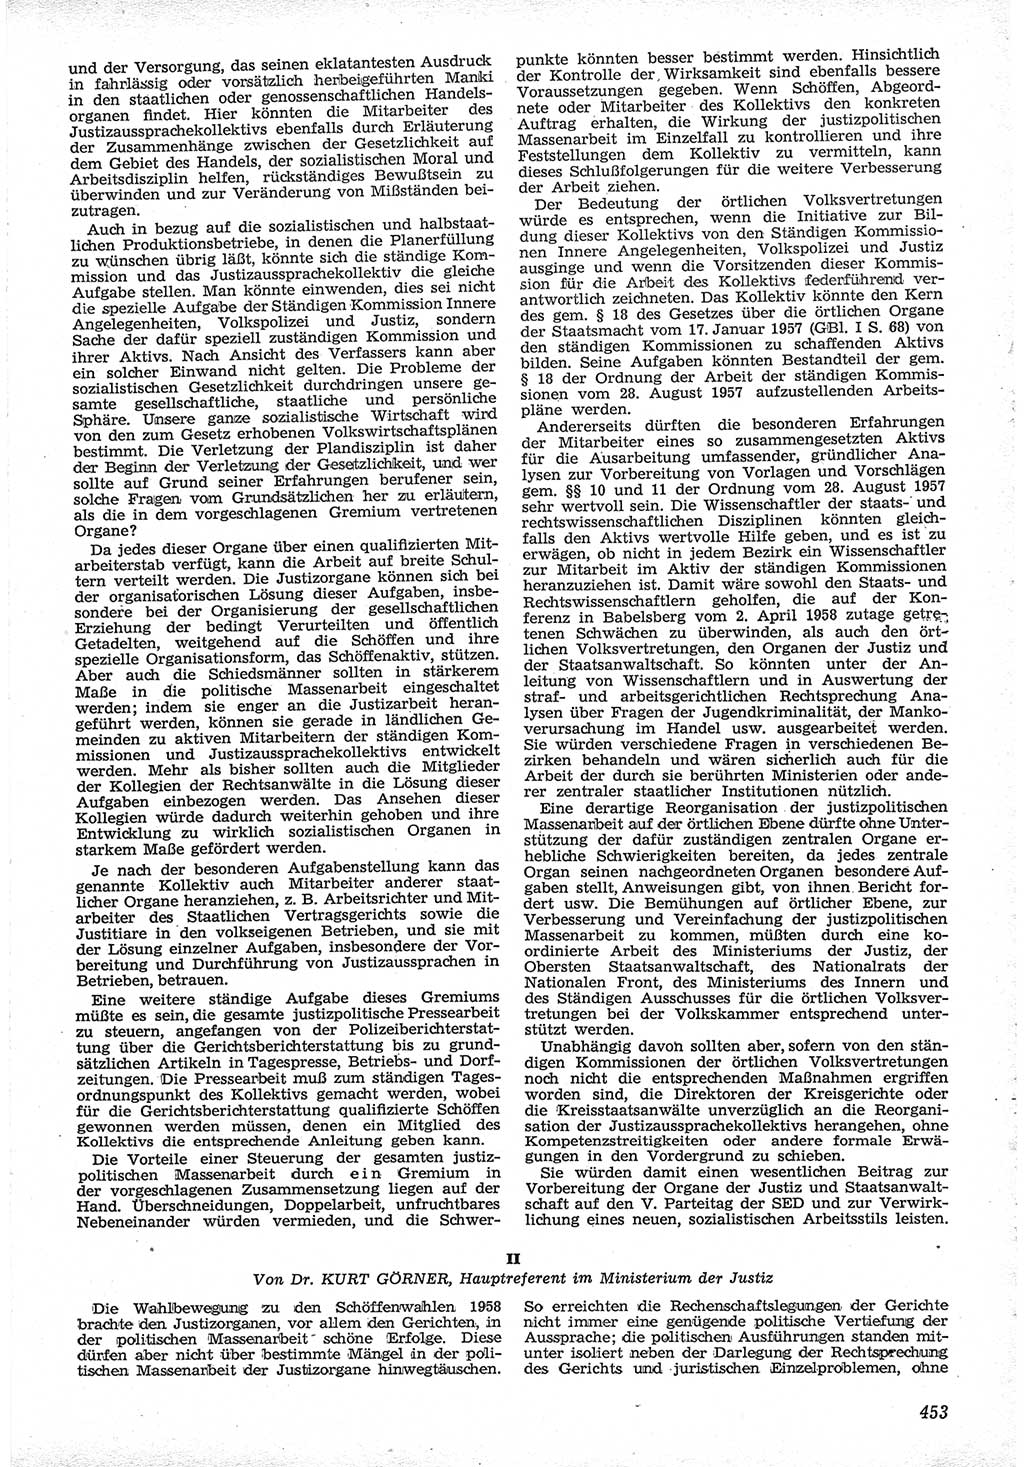 Neue Justiz (NJ), Zeitschrift für Recht und Rechtswissenschaft [Deutsche Demokratische Republik (DDR)], 12. Jahrgang 1958, Seite 453 (NJ DDR 1958, S. 453)